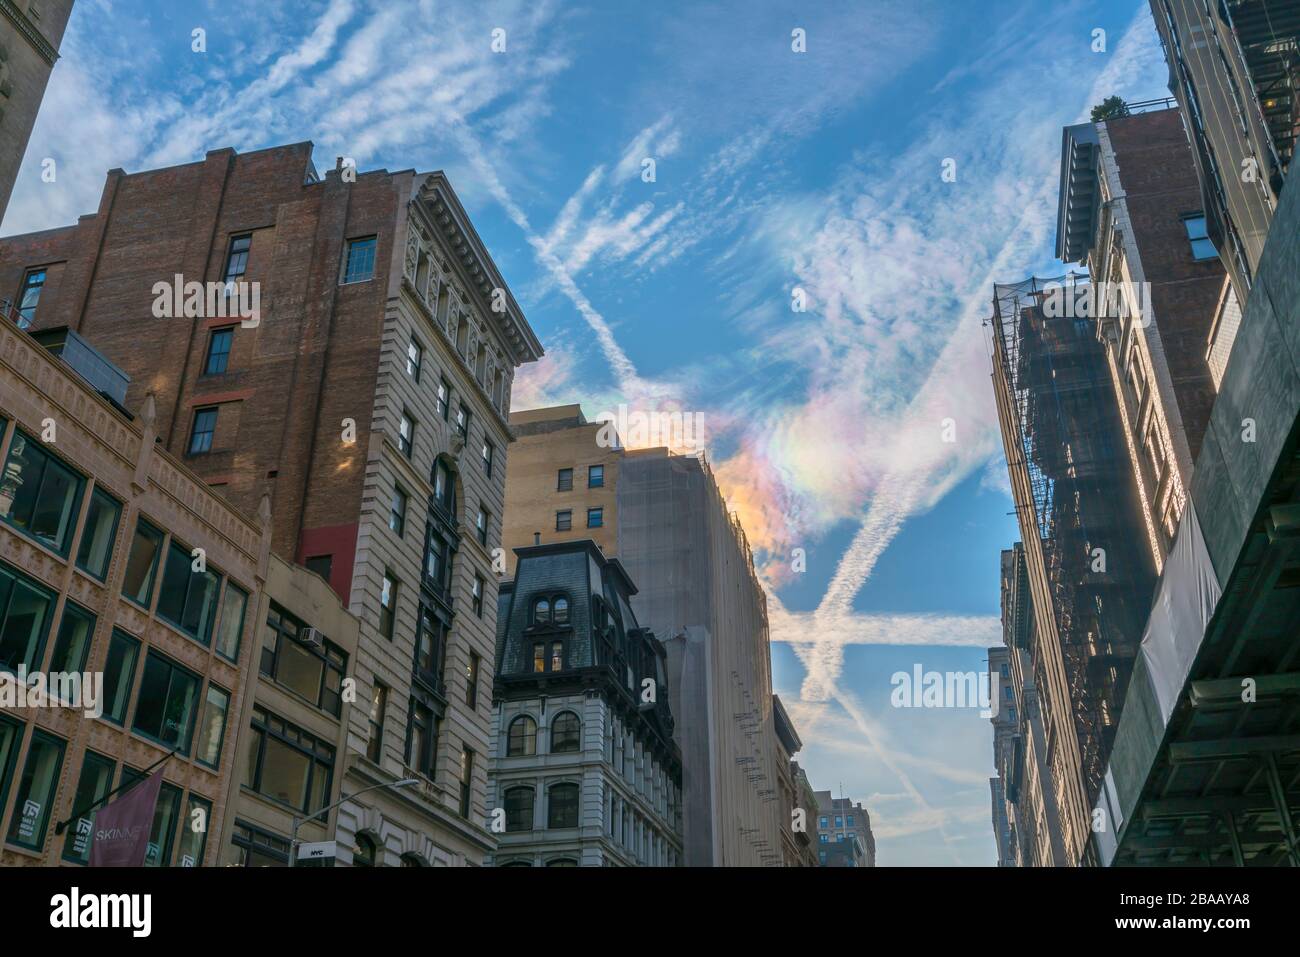 Circumhorizontal Arc Rainbow erscheint im Winter über den Midtown Manhattan Fifth Avenue Gebäuden in New York City, New York, New York, New York, New York, New York, USA am 27. Dezember 2018. Stockfoto